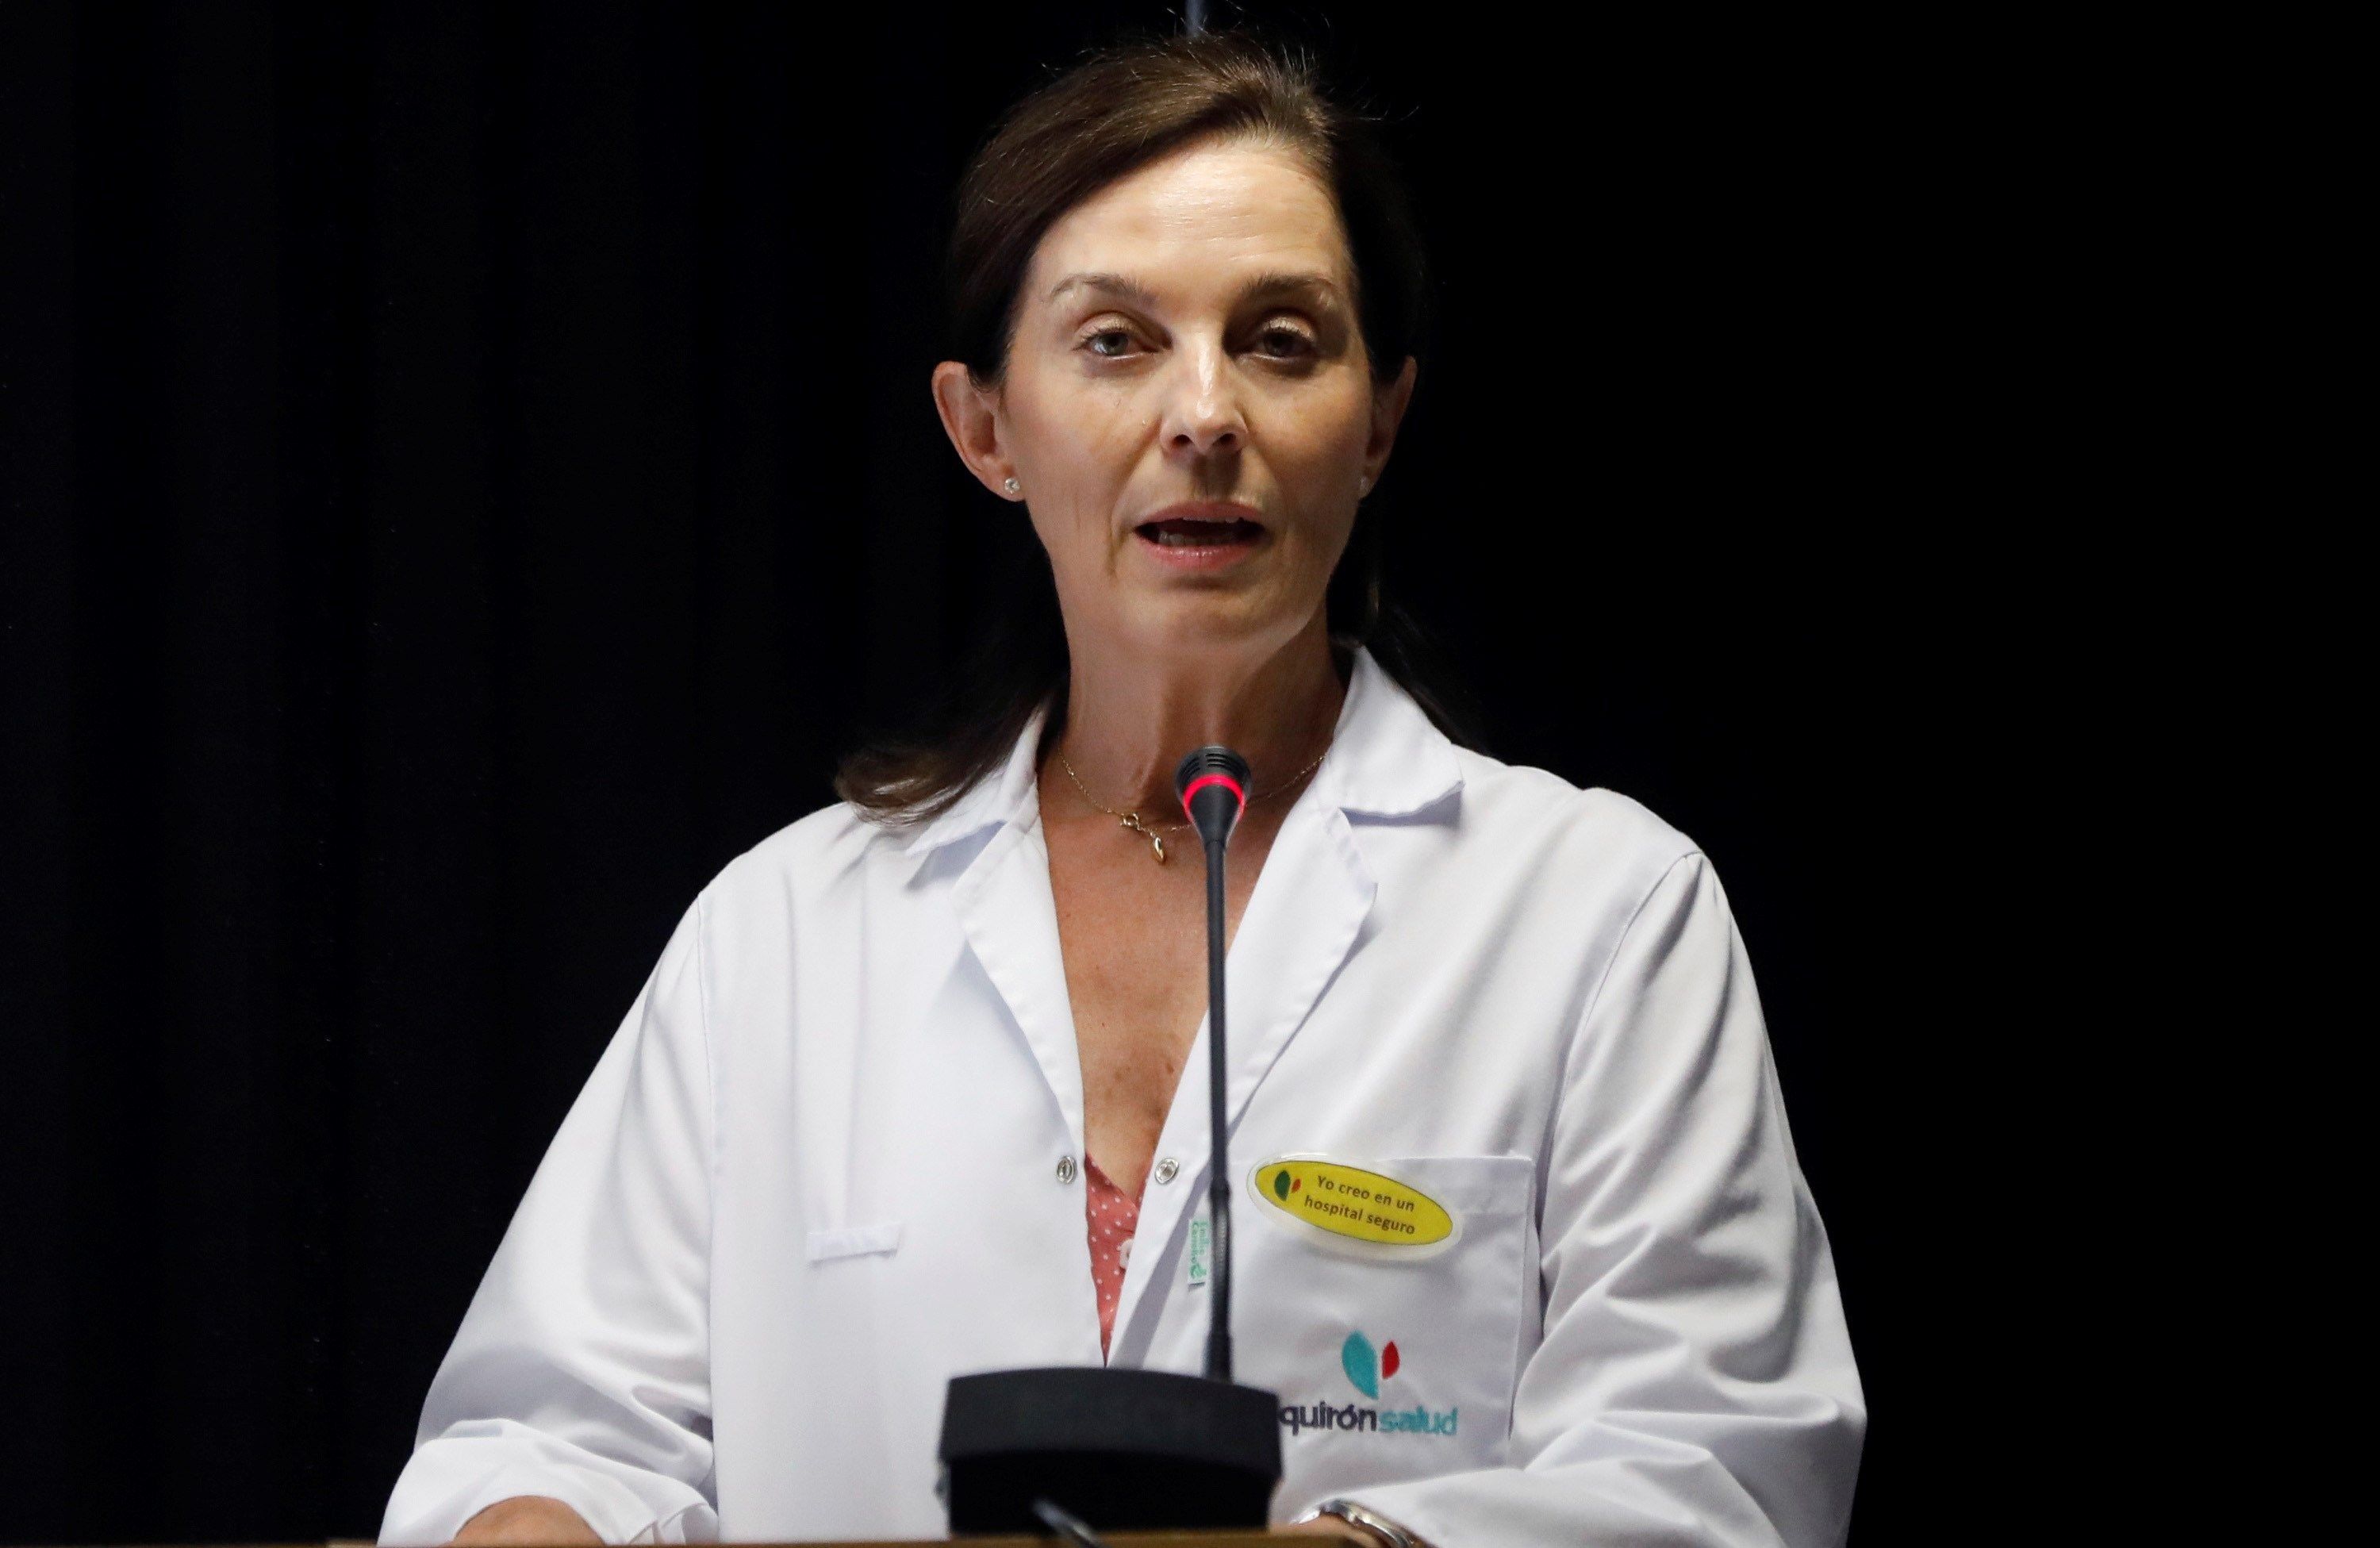 La directora gerente del hospital Quirón de Pozuelo de Alarcón, la doctora Lucía Alonso, ofreció una rueda de prensa. (Foto: EFE)